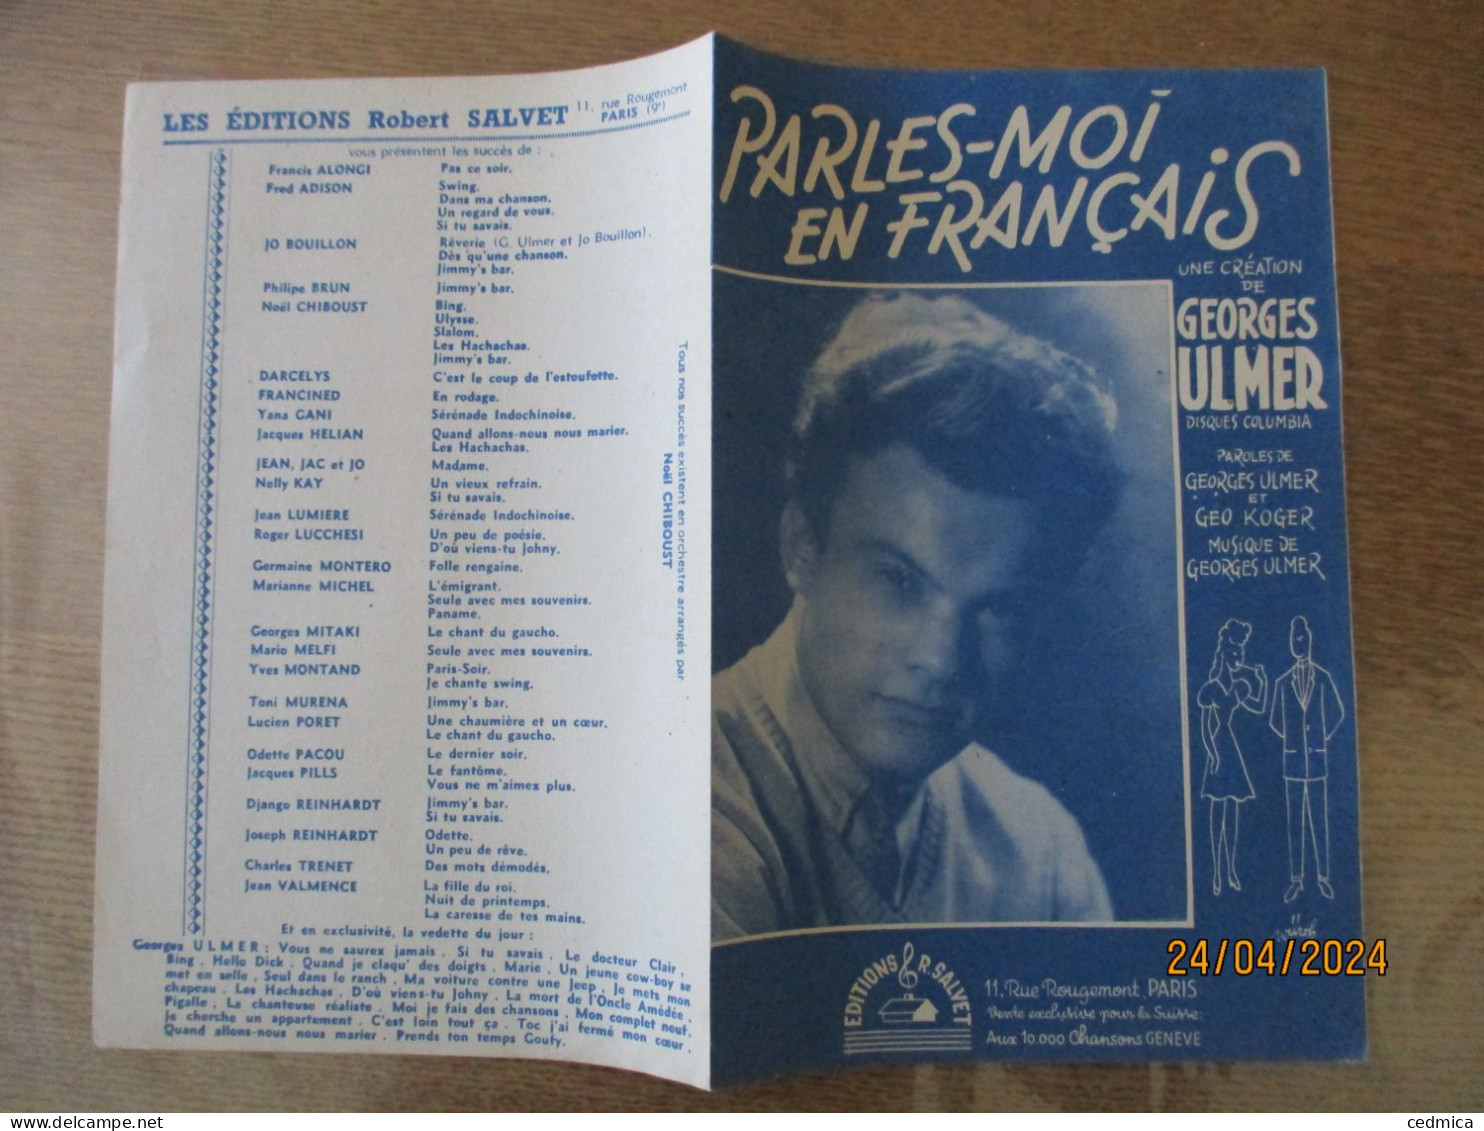 PARLE-MOI EN FRANCAIS....PAROLES DE GEORGES ULMER & GEO KOGER MUSIQUE DE GEORGES ULMER - Partitions Musicales Anciennes